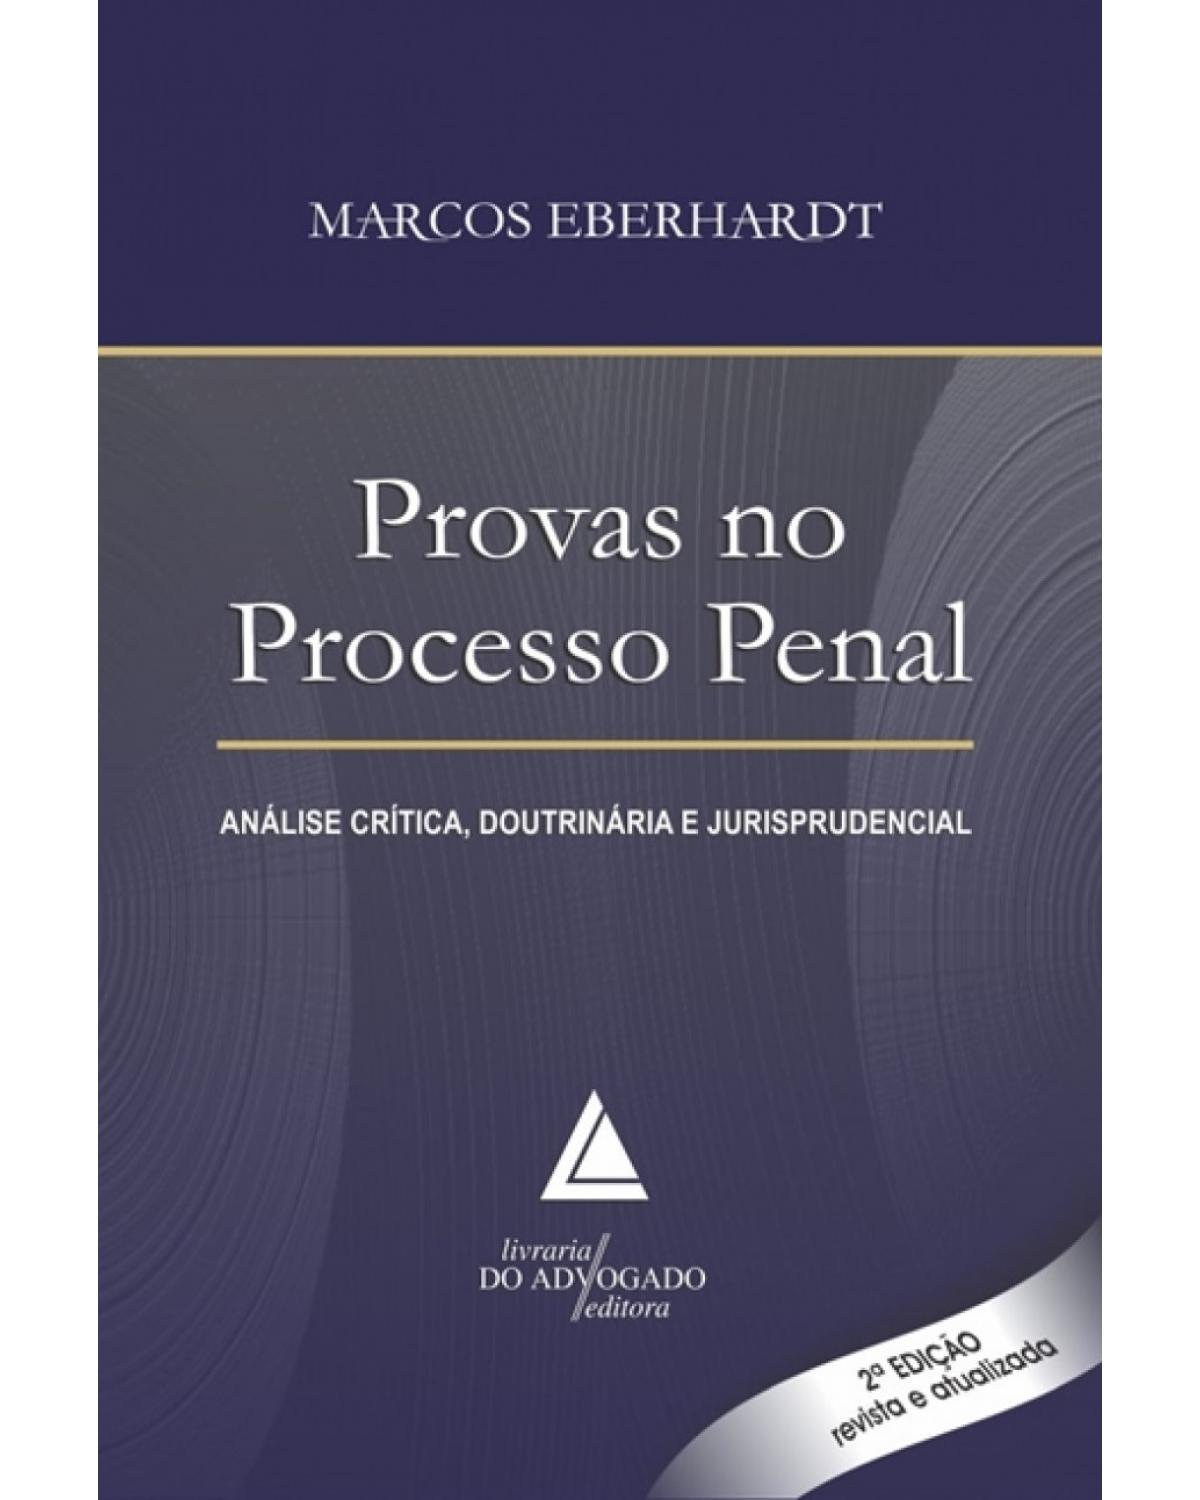 Provas no processo penal: Análise crítica, doutrinária e jurisprudencial - 2ª Edição